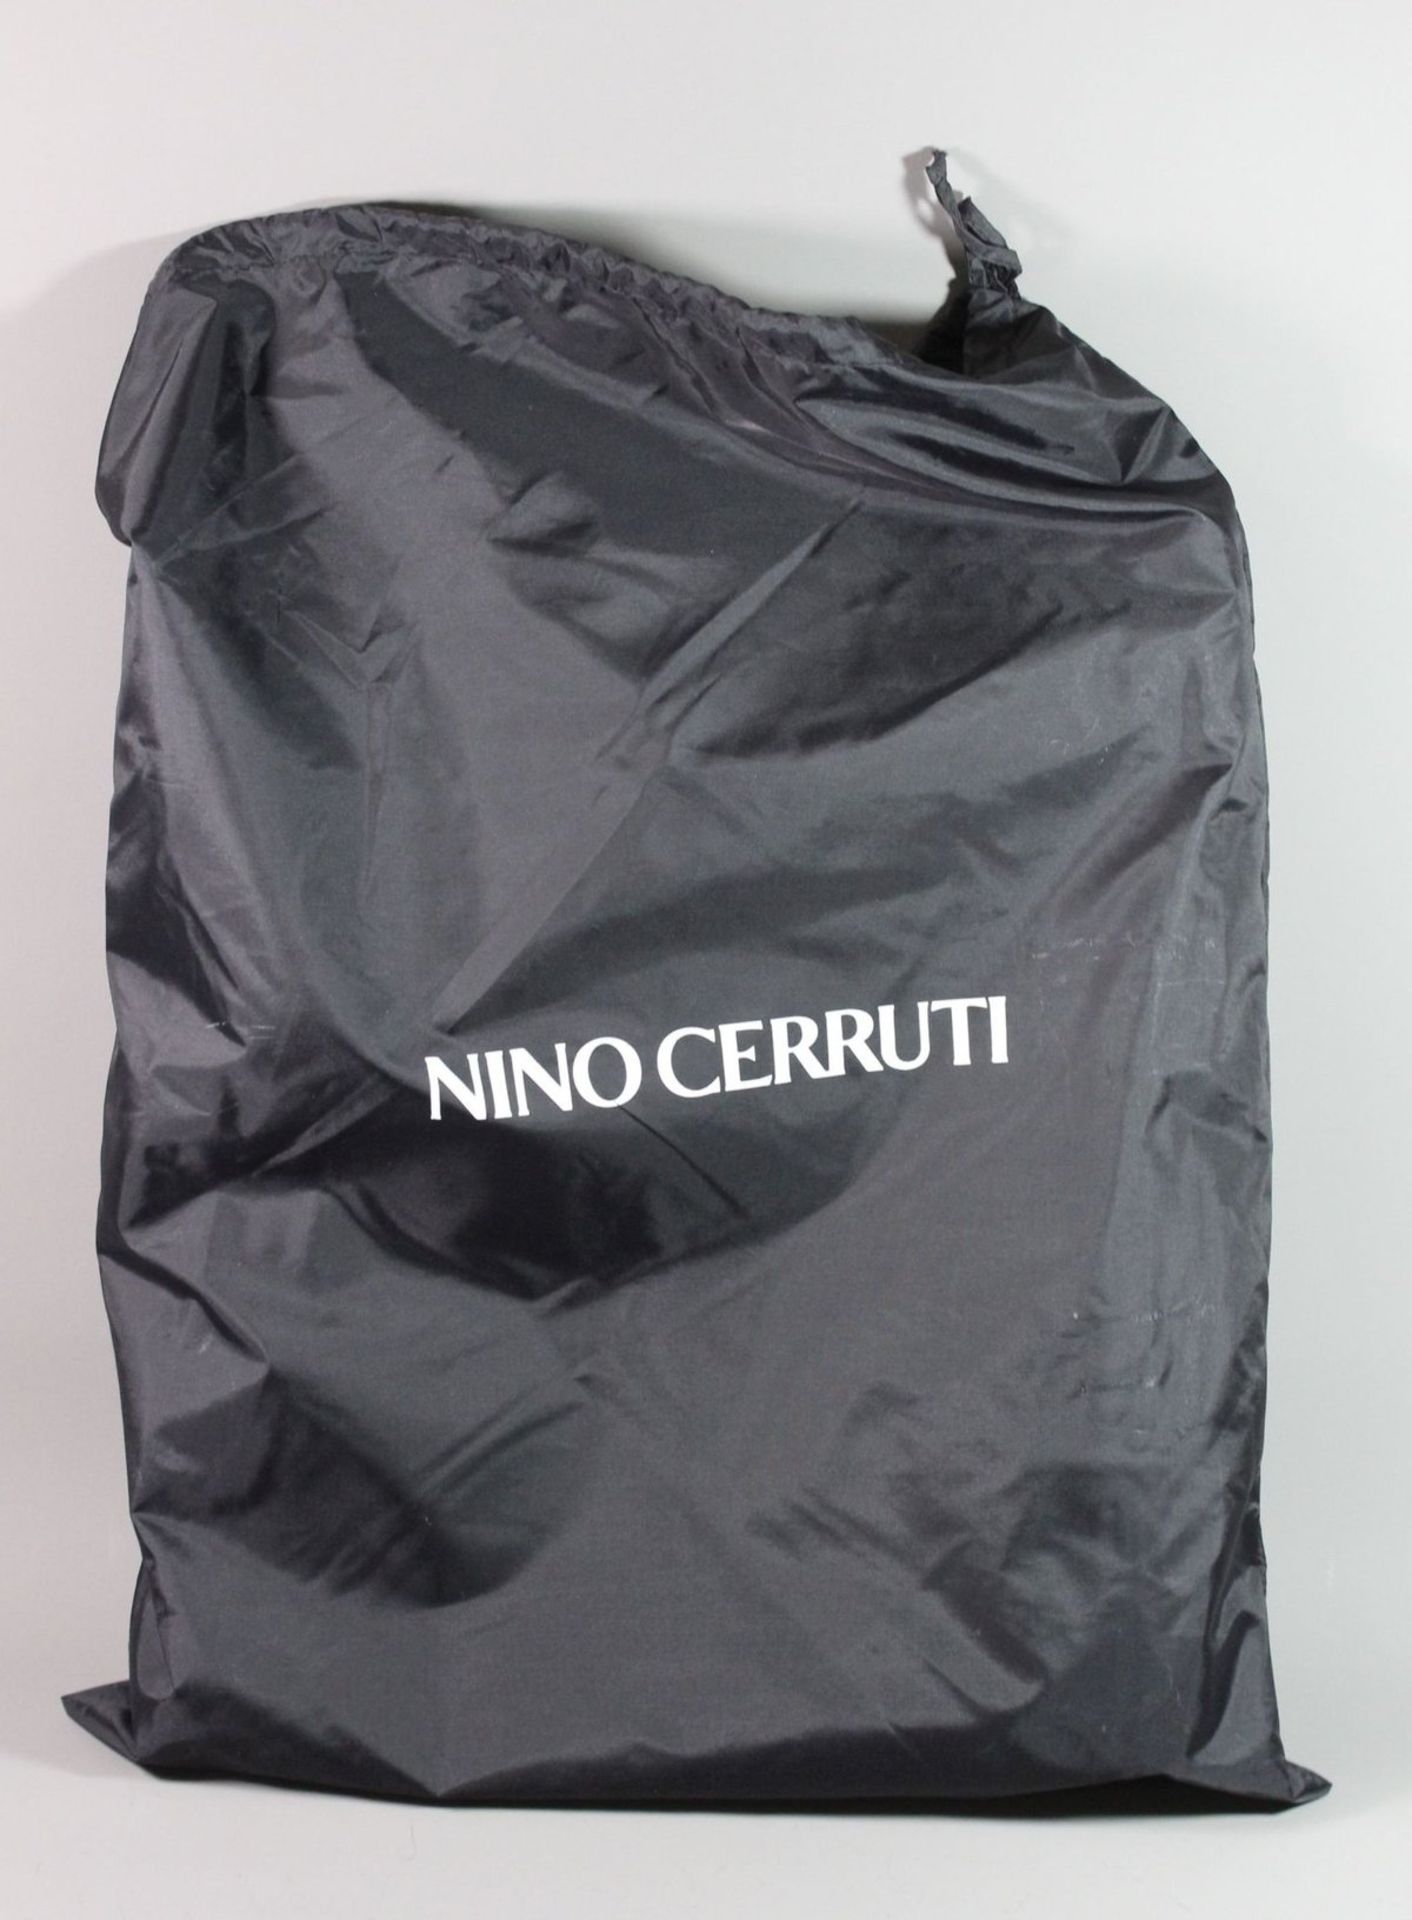 Aktentasche "NINO CERRUTI", neuwertiger Zustand, 36 x 40cm.  - Bild 7 aus 7